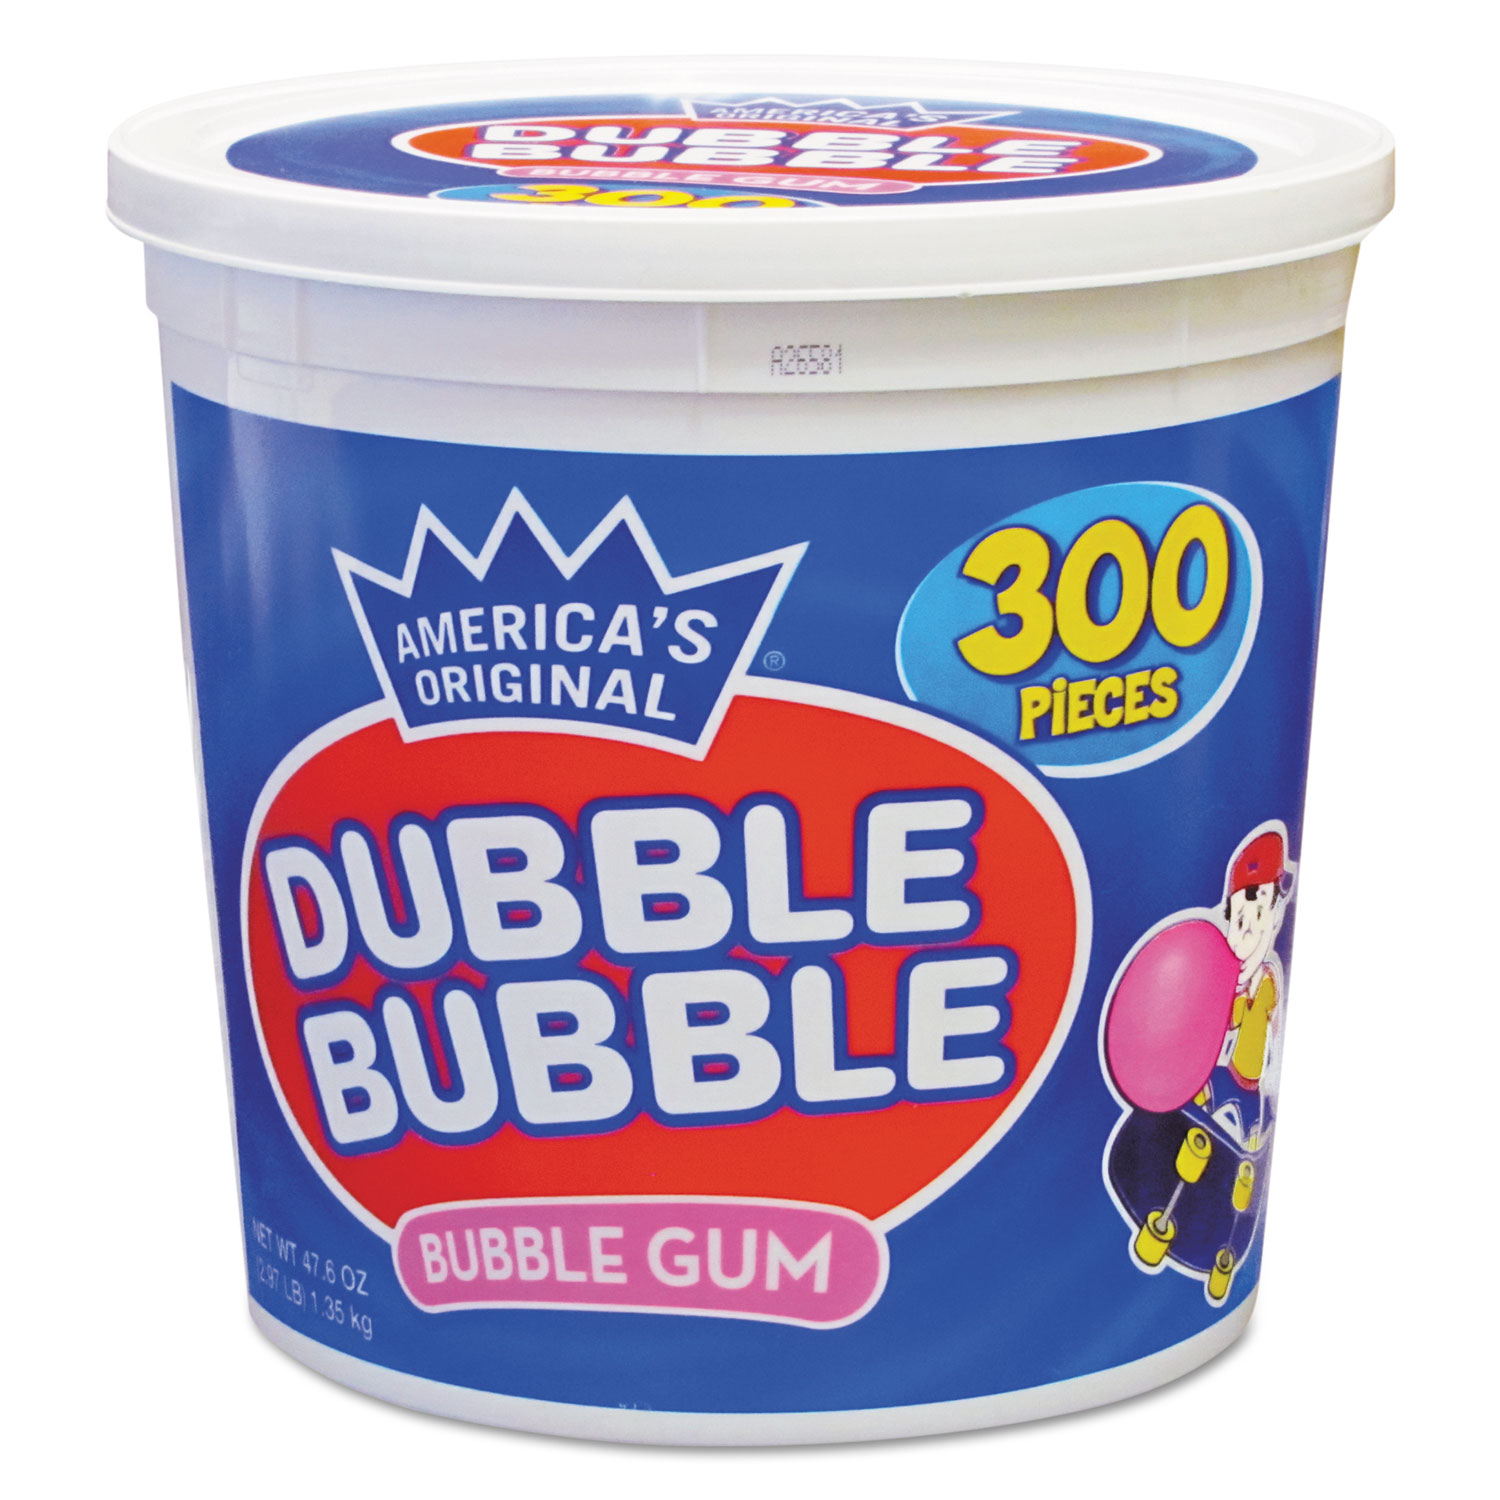  Dubble Bubble CVT16403 Bubble Gum, Original Pink, 300/Tub (TOO16403) 